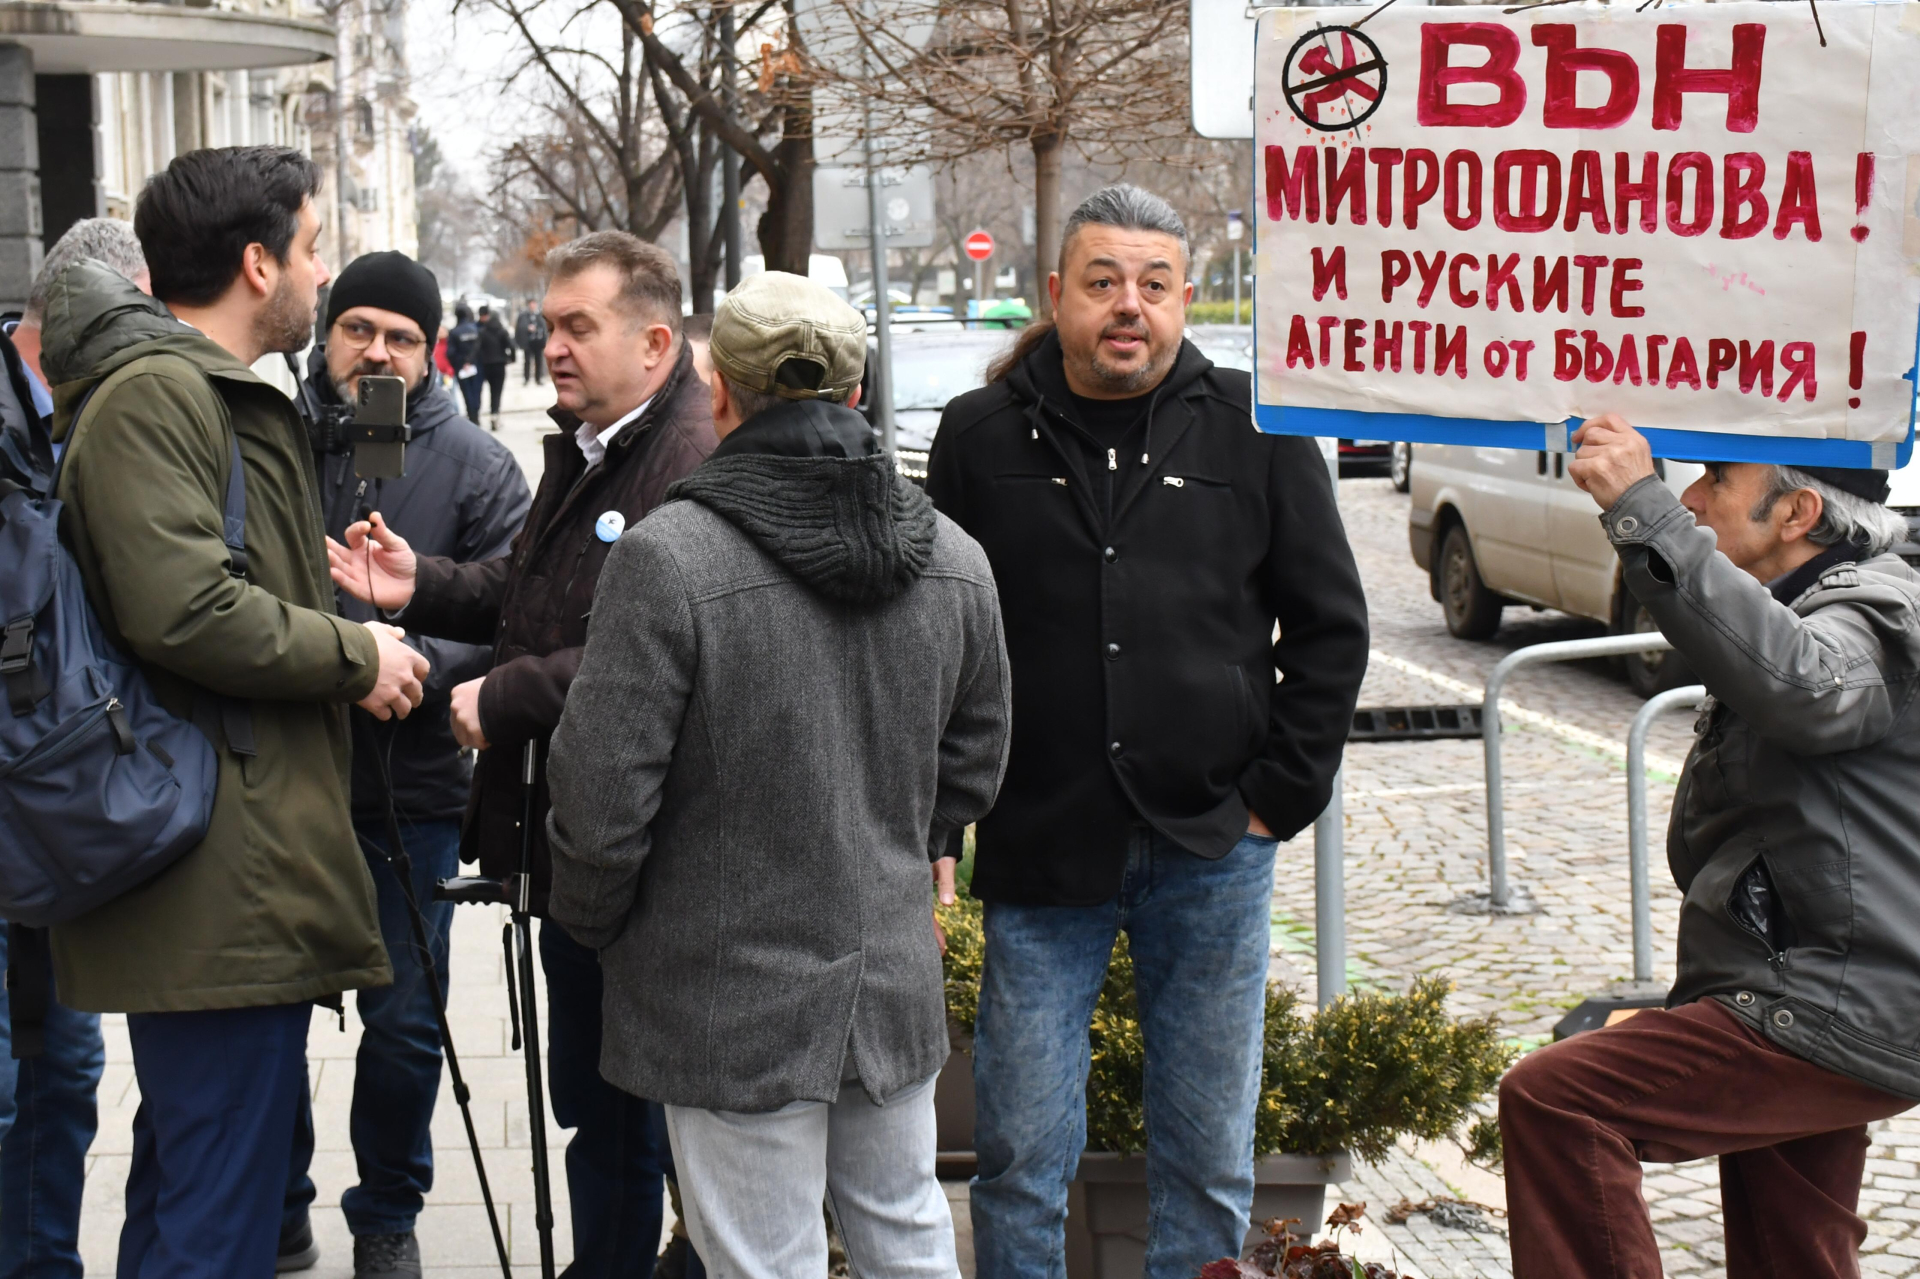 Нов скандал с Митрофанова - граждани на протест, а Терзиев пази цветята 